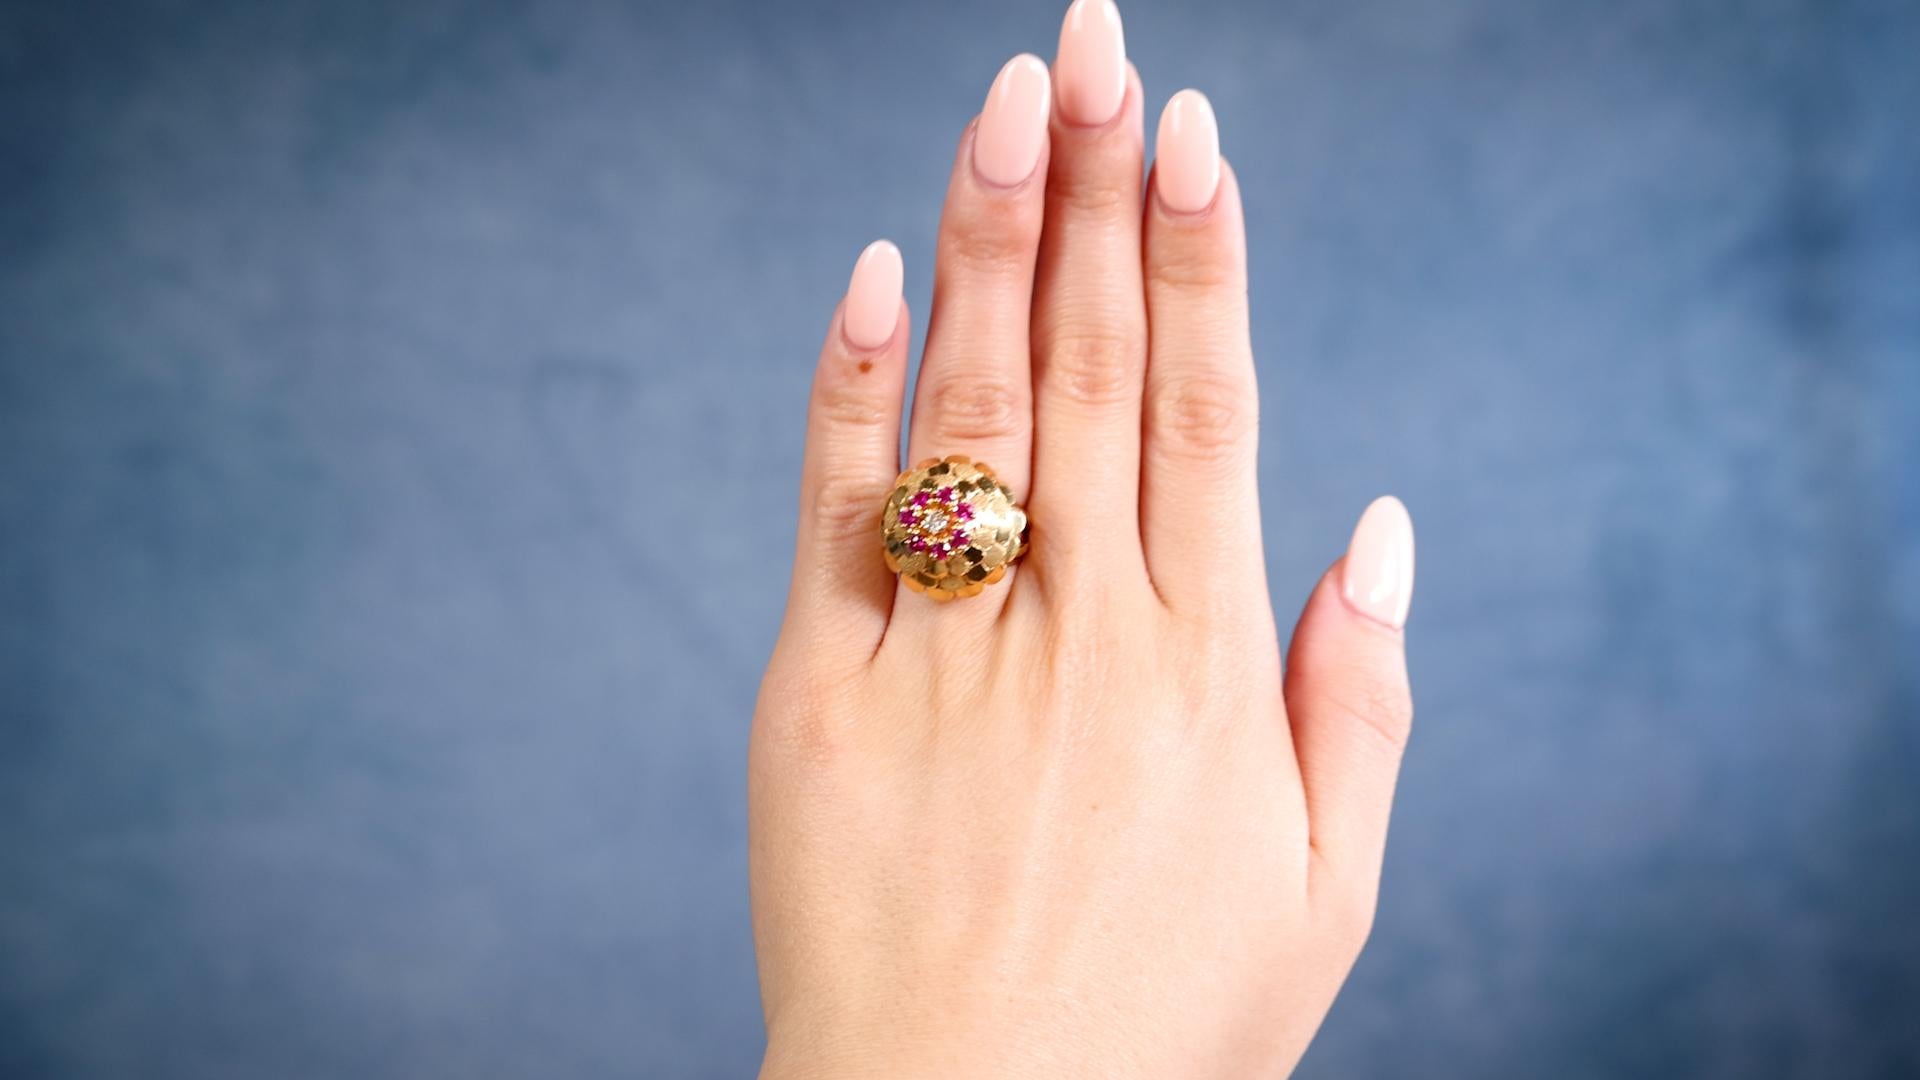 Ein Mid-Century Diamant Rubin 18k Gelbgold Cocktail Ring. Mit einem runden Diamanten im Brillantschliff mit einem Gewicht von ca. 0,15 Karat, Farbe J, Reinheit I1. Akzentuiert durch sieben runde Rubine im Brillantschliff mit einem Gesamtgewicht von